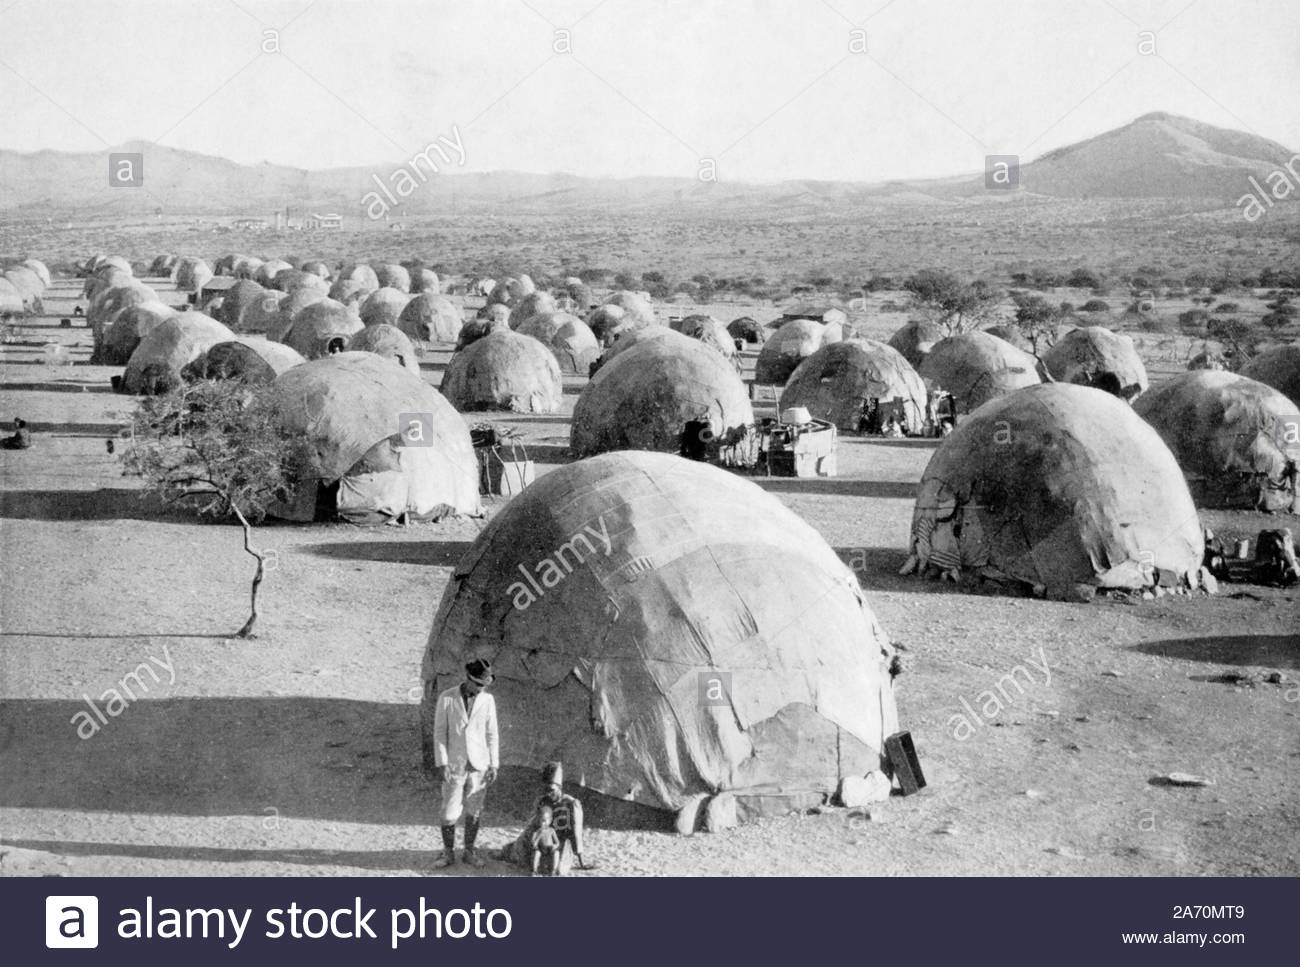 WW1 Kraal nativa en alemán del África Sudoccidental, vintage fotografía de 1914 Foto de stock